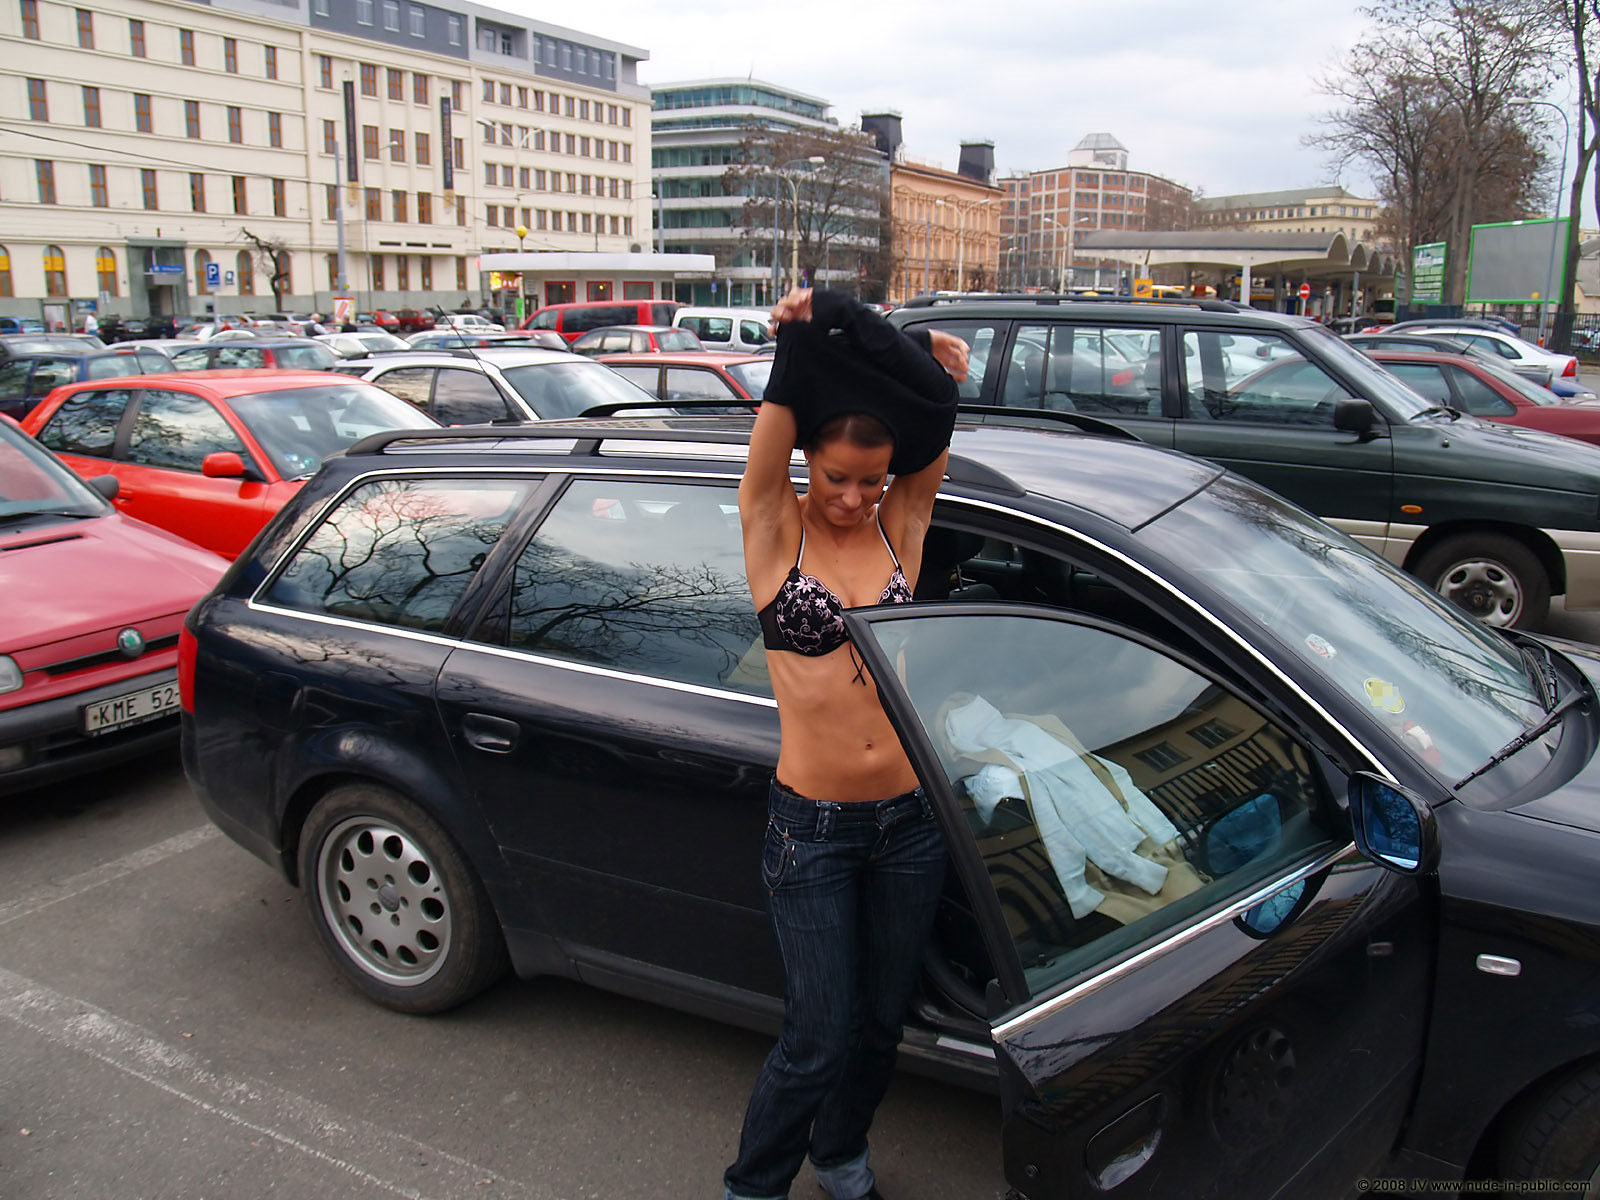 melisa-u-car-audi-flash-on-parking-nude-in-public-06